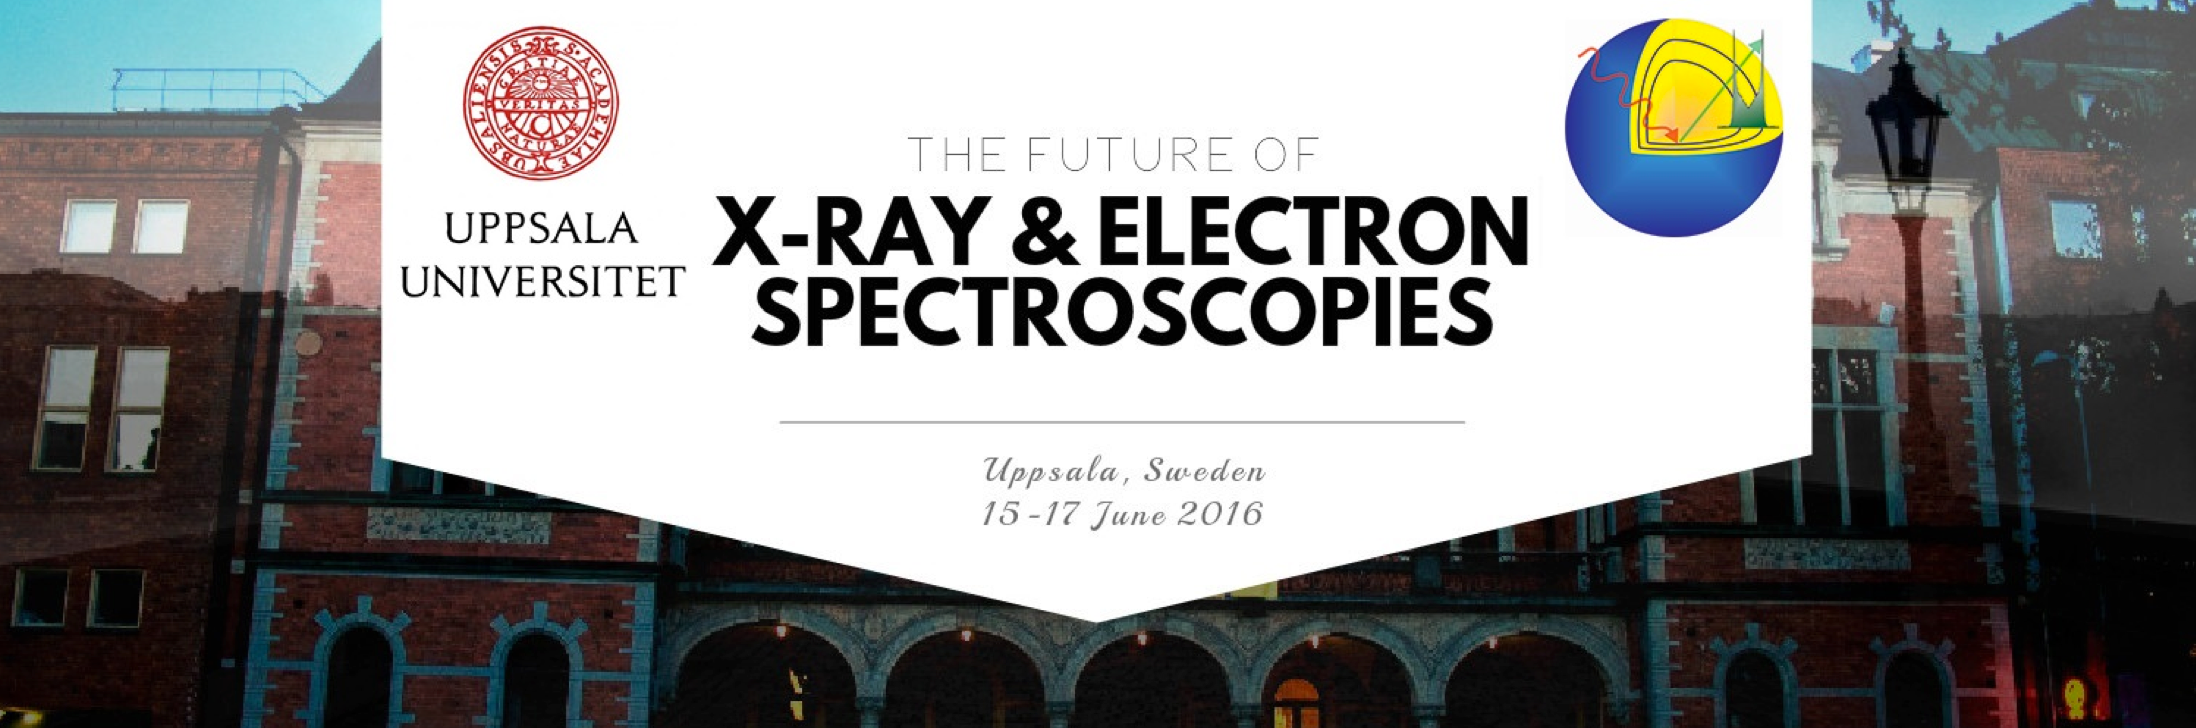 Spectroscopy_conference_Uppsala